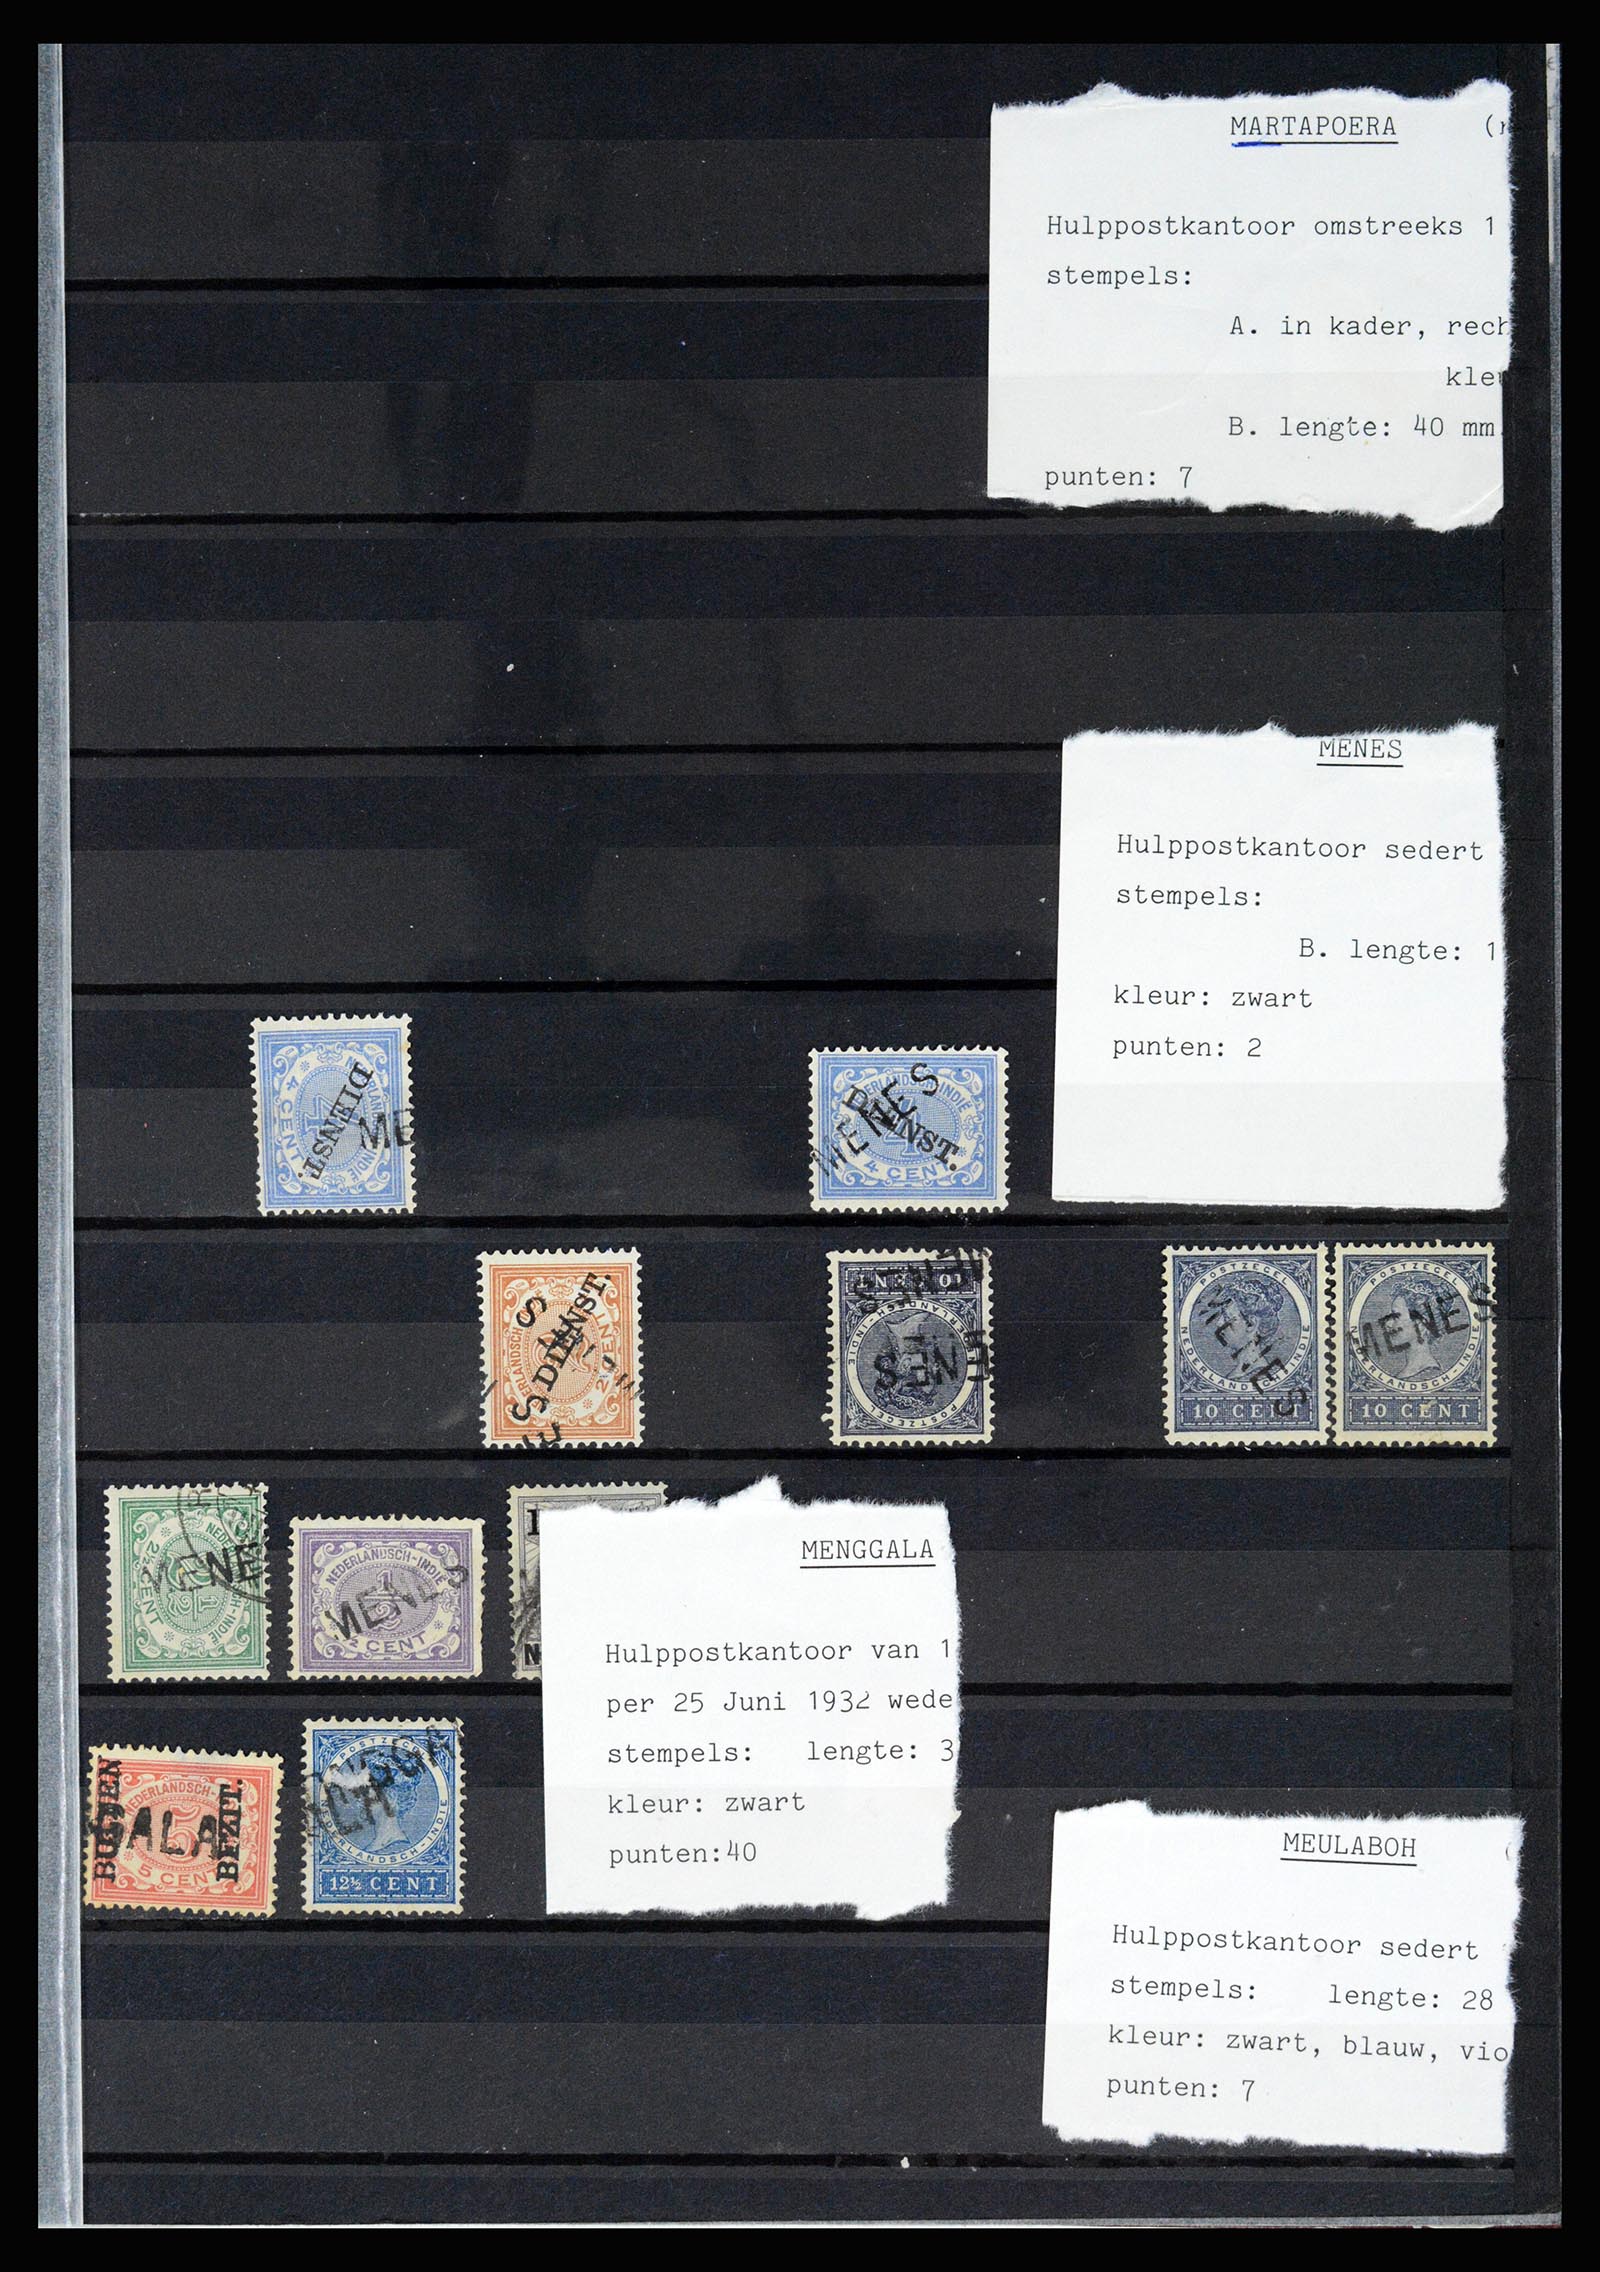 36512 045 - Stamp collection 36512 Nederlands Indië stempels 1872-1930.